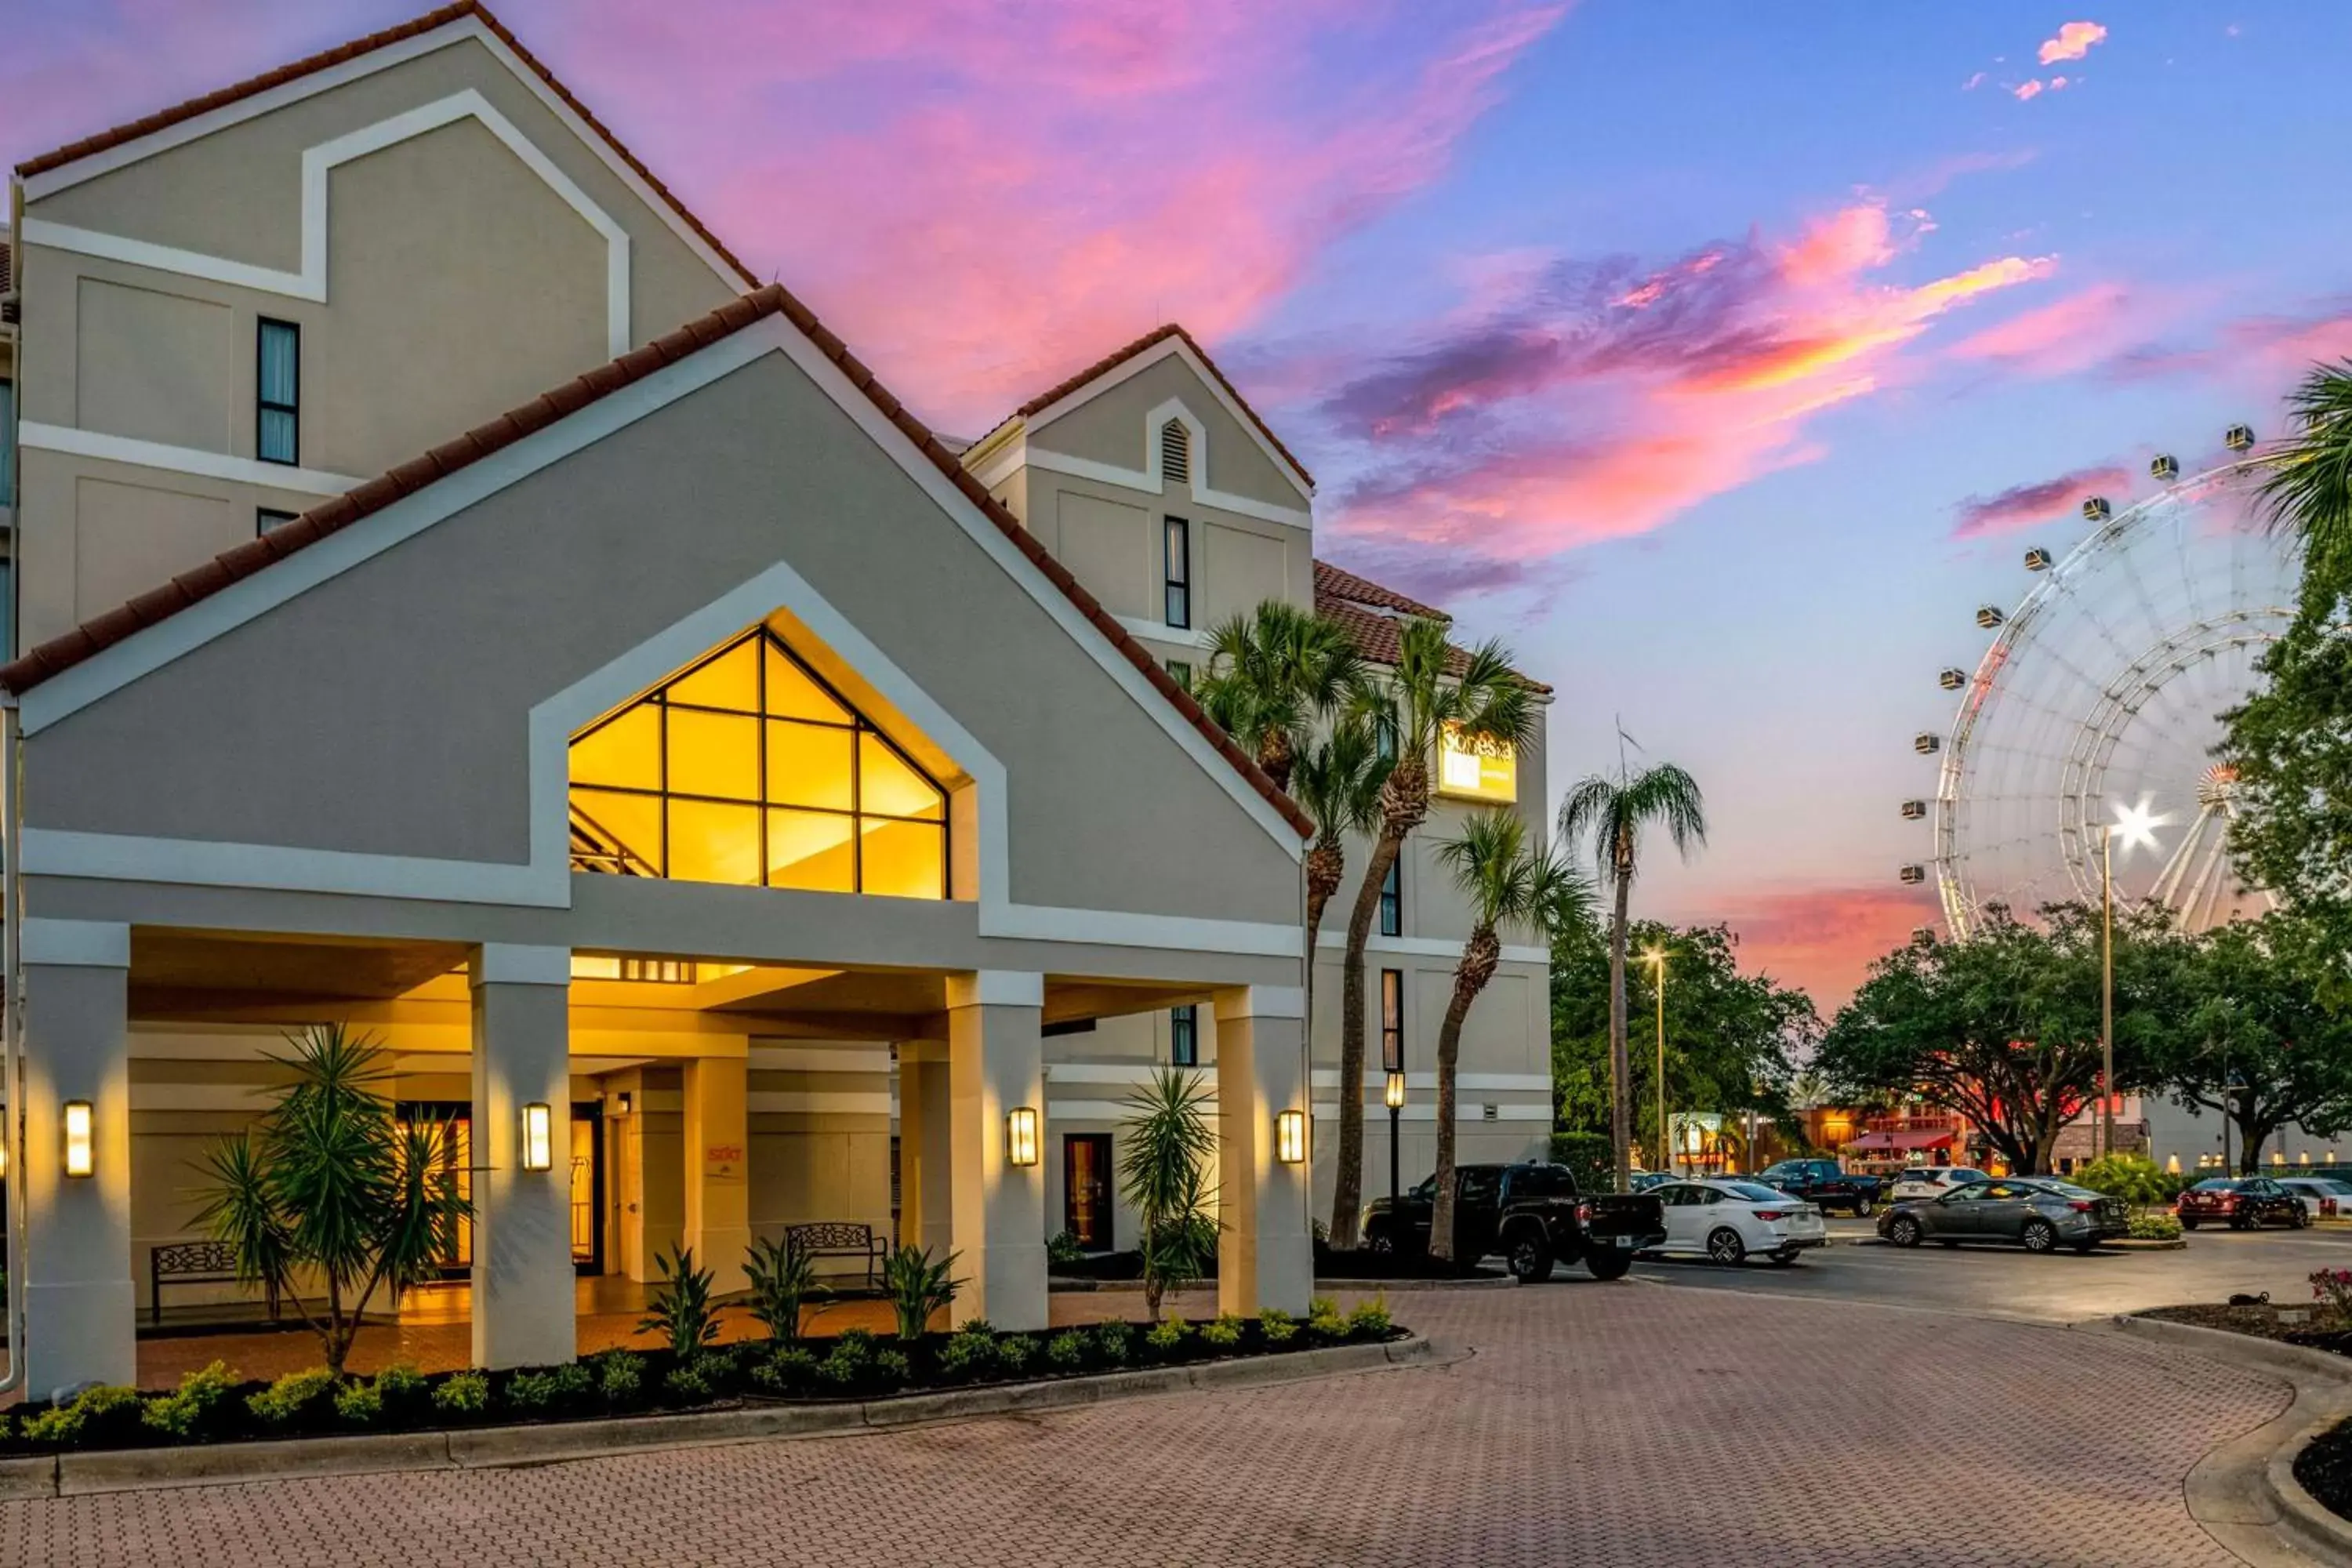 Property Building in Sonesta ES Suites Orlando International Drive